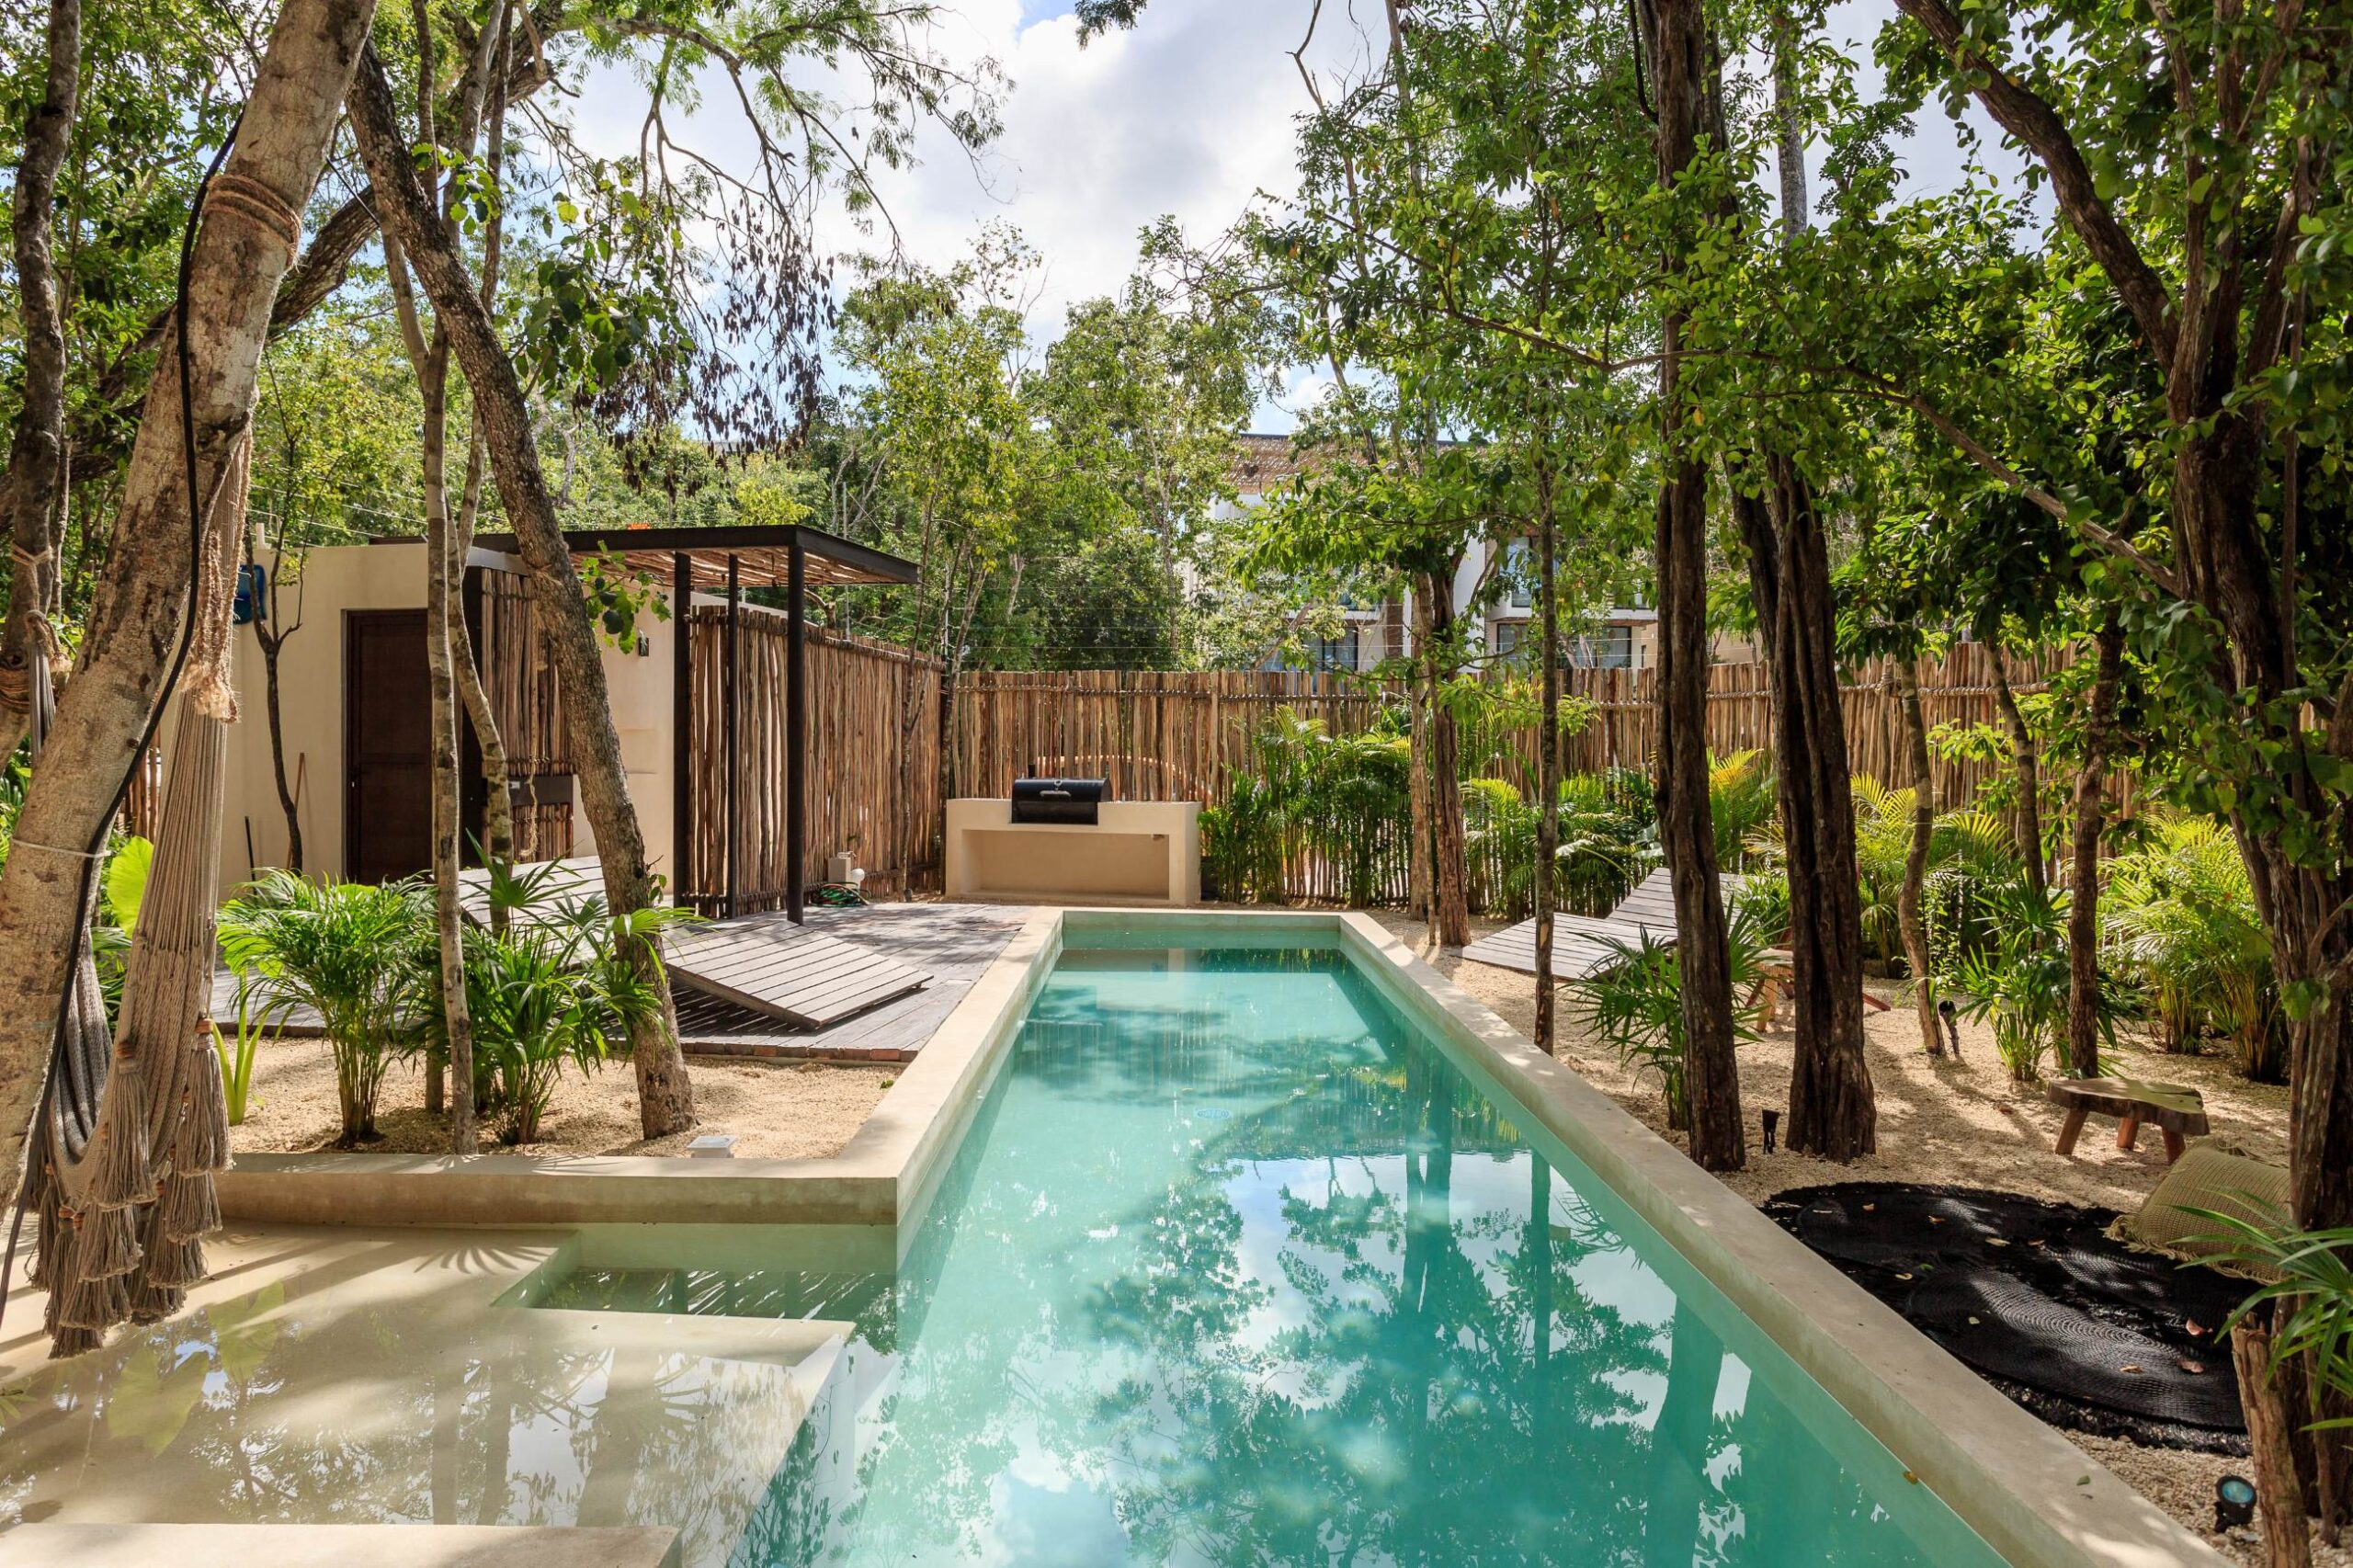 t real estate in tulum mexico villa alakin common area pool